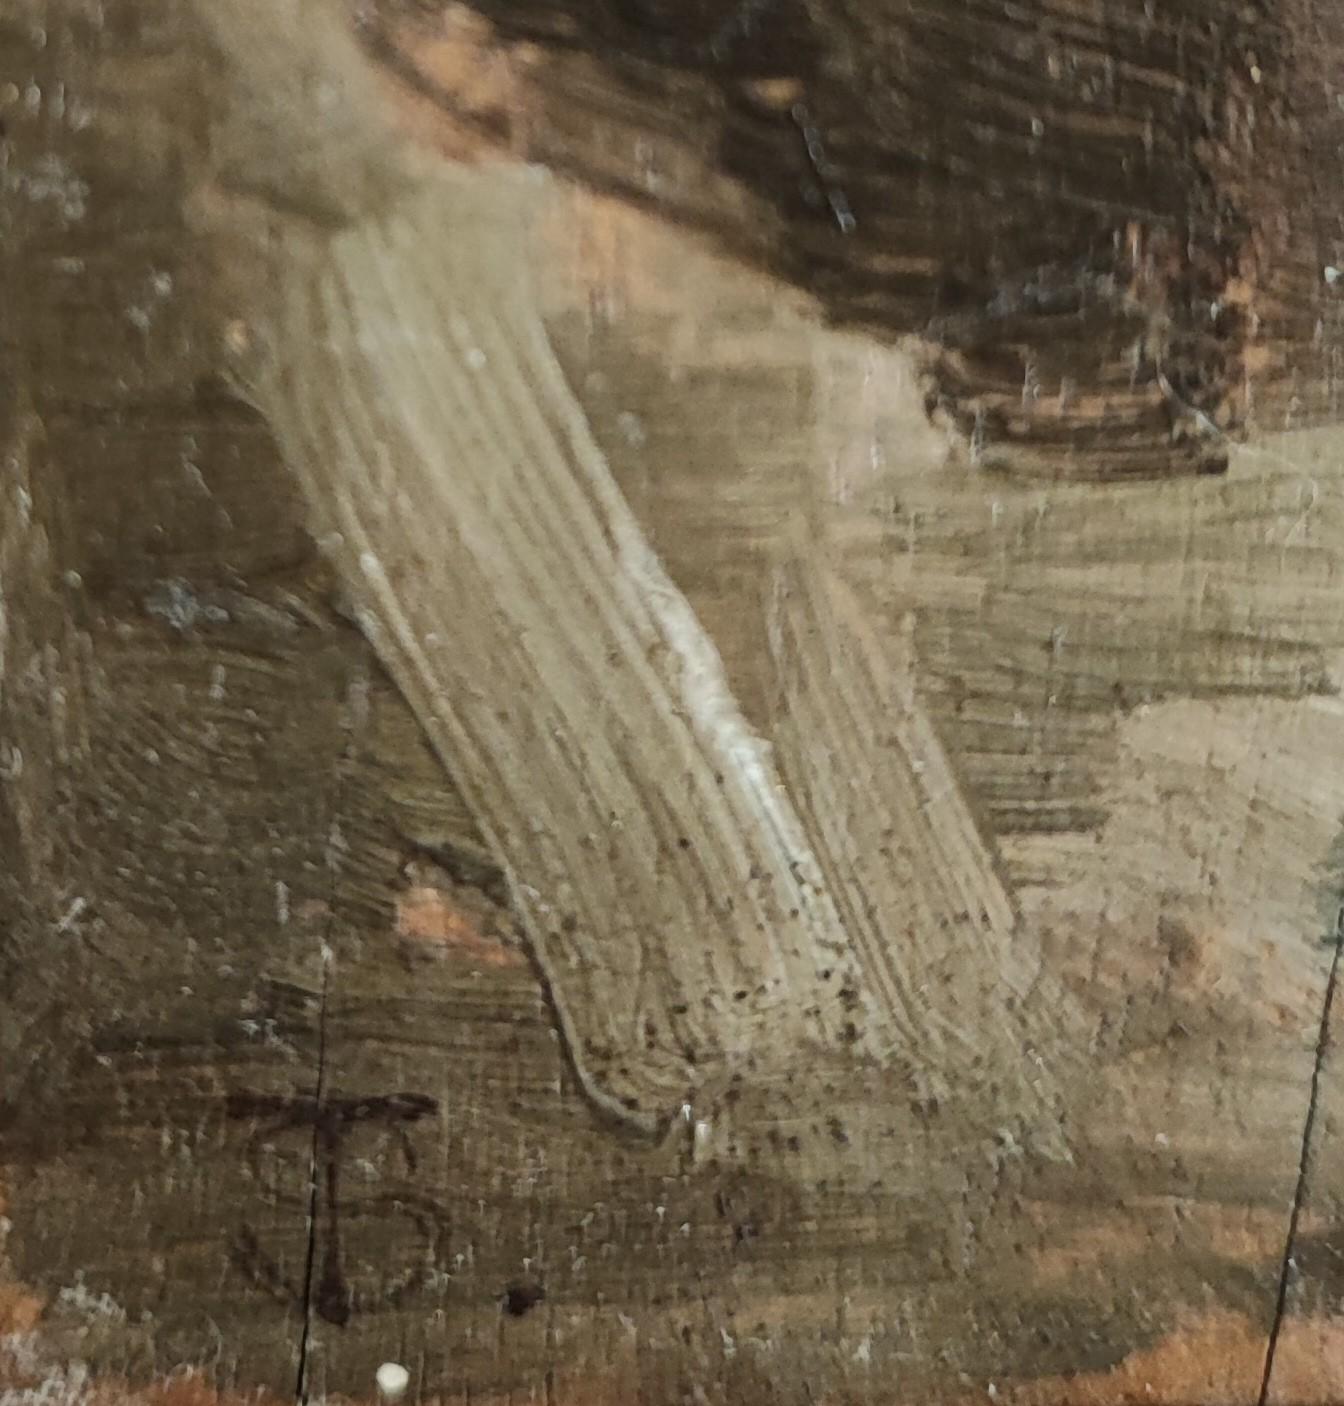 TS de travail avec monogramme

Travail du bois
Cadre en bois et plâtre doré
41.5 x 29.5 x 4 cm